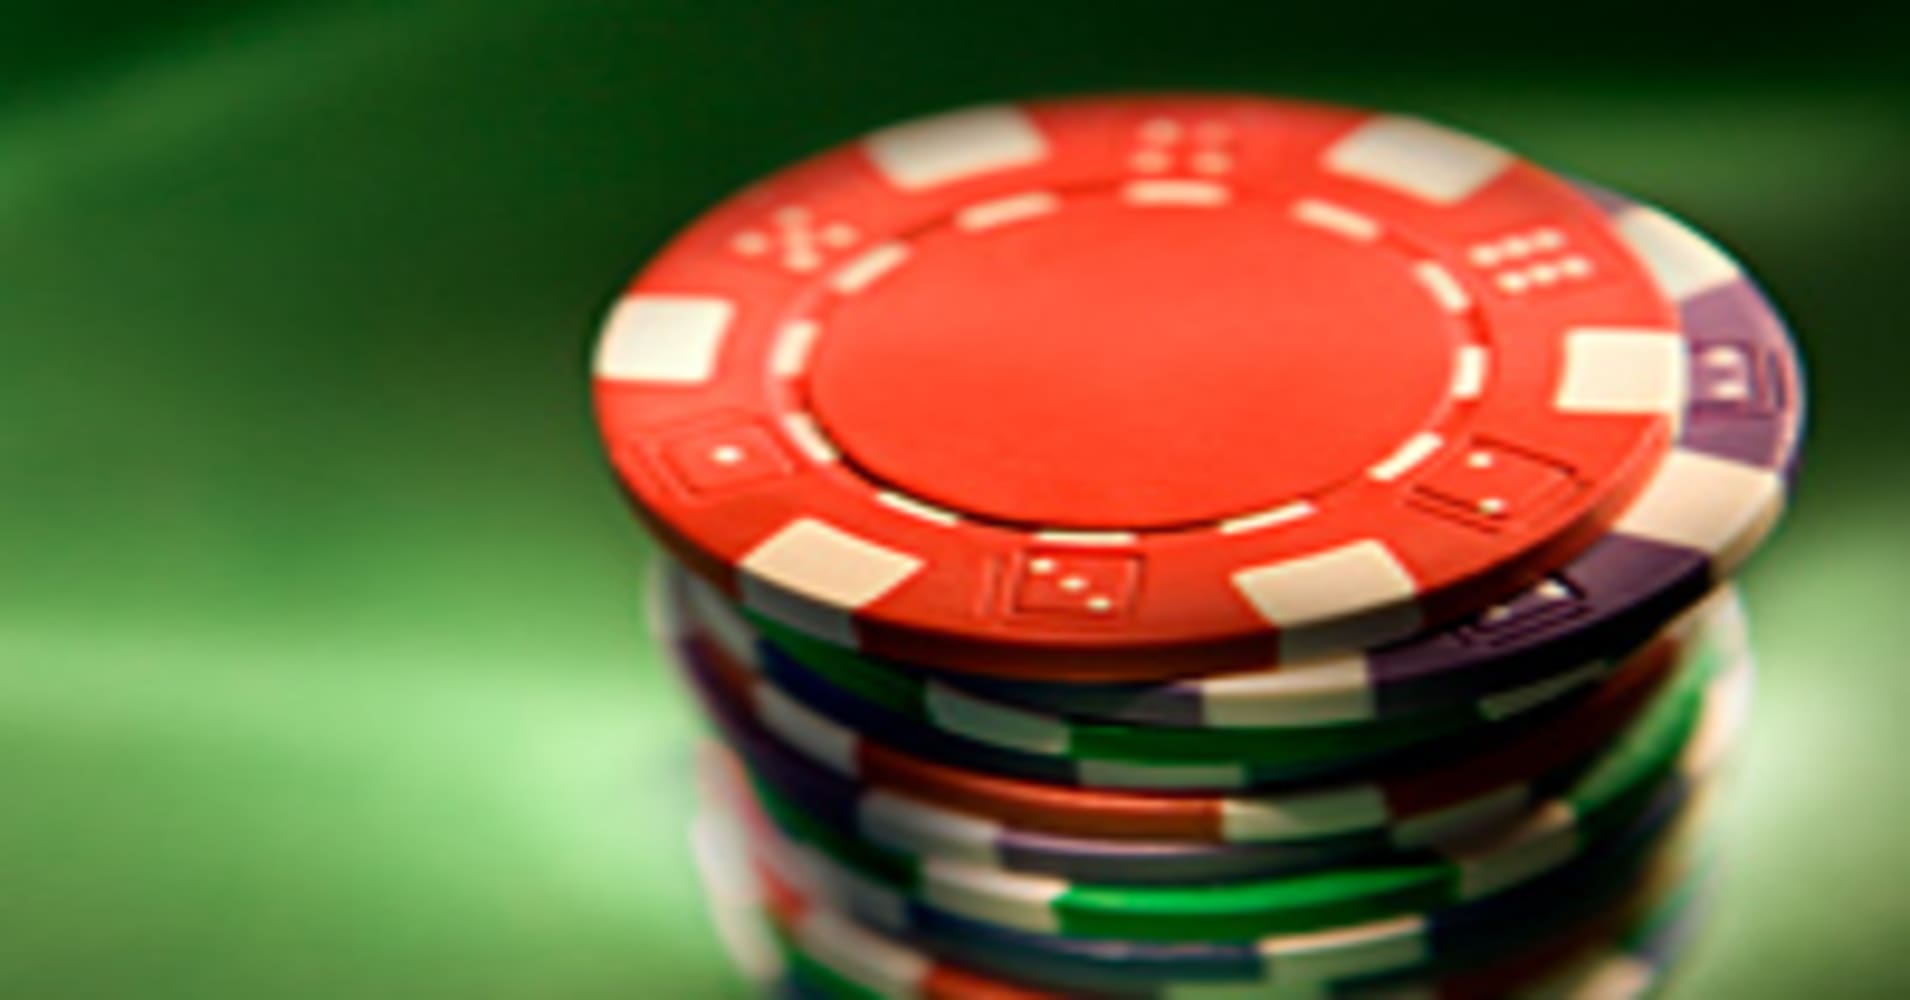 Agen Idn Poker Sama Beragam Jenis Taruhan Online Kartu Menarik